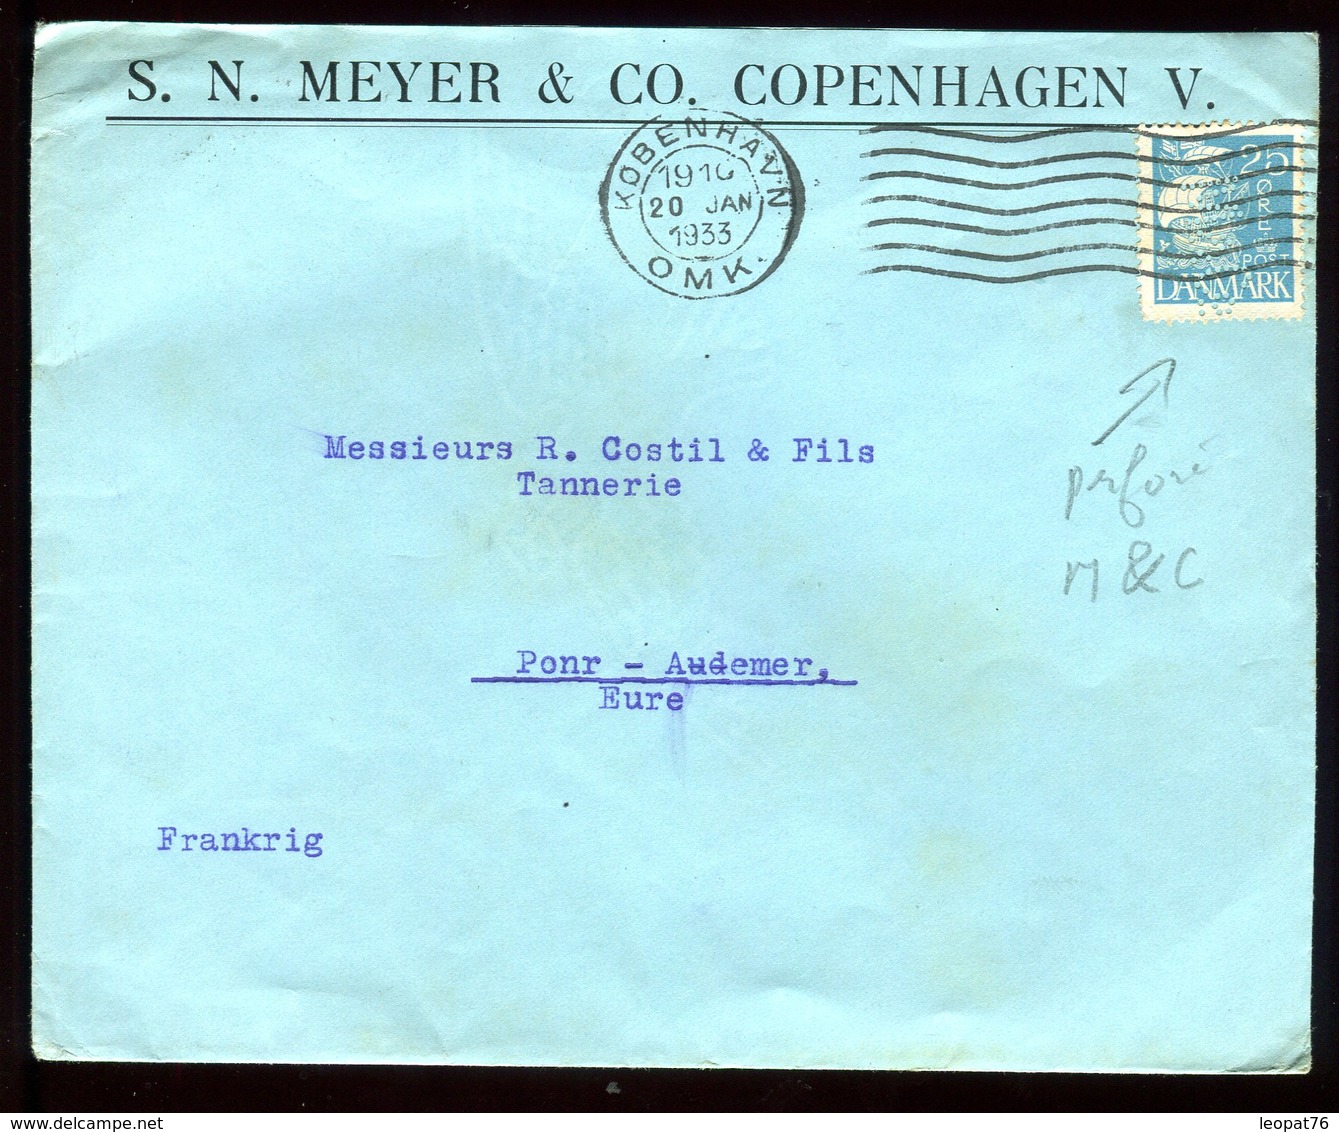 Danemark - Perforé M&C Sur Enveloppe Commerciale De Copenhague Pour La France En 1933 - Réf O40 - Briefe U. Dokumente